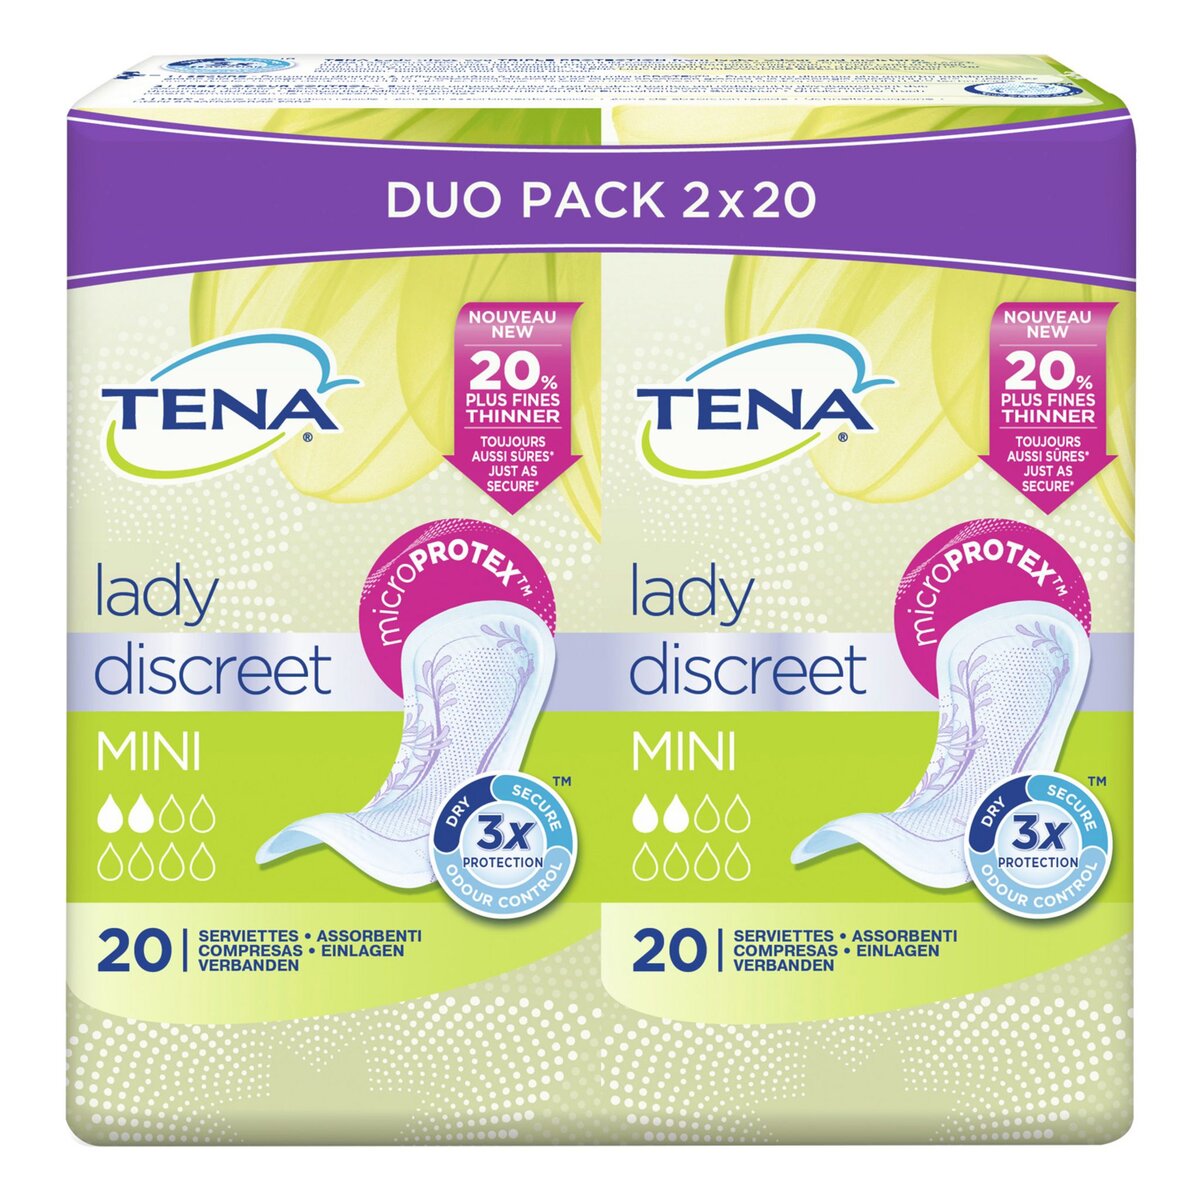 TENA LADY Discreet serviettes hygiéniques sans ailettes mini 40 serviettes 2x20 serviettes